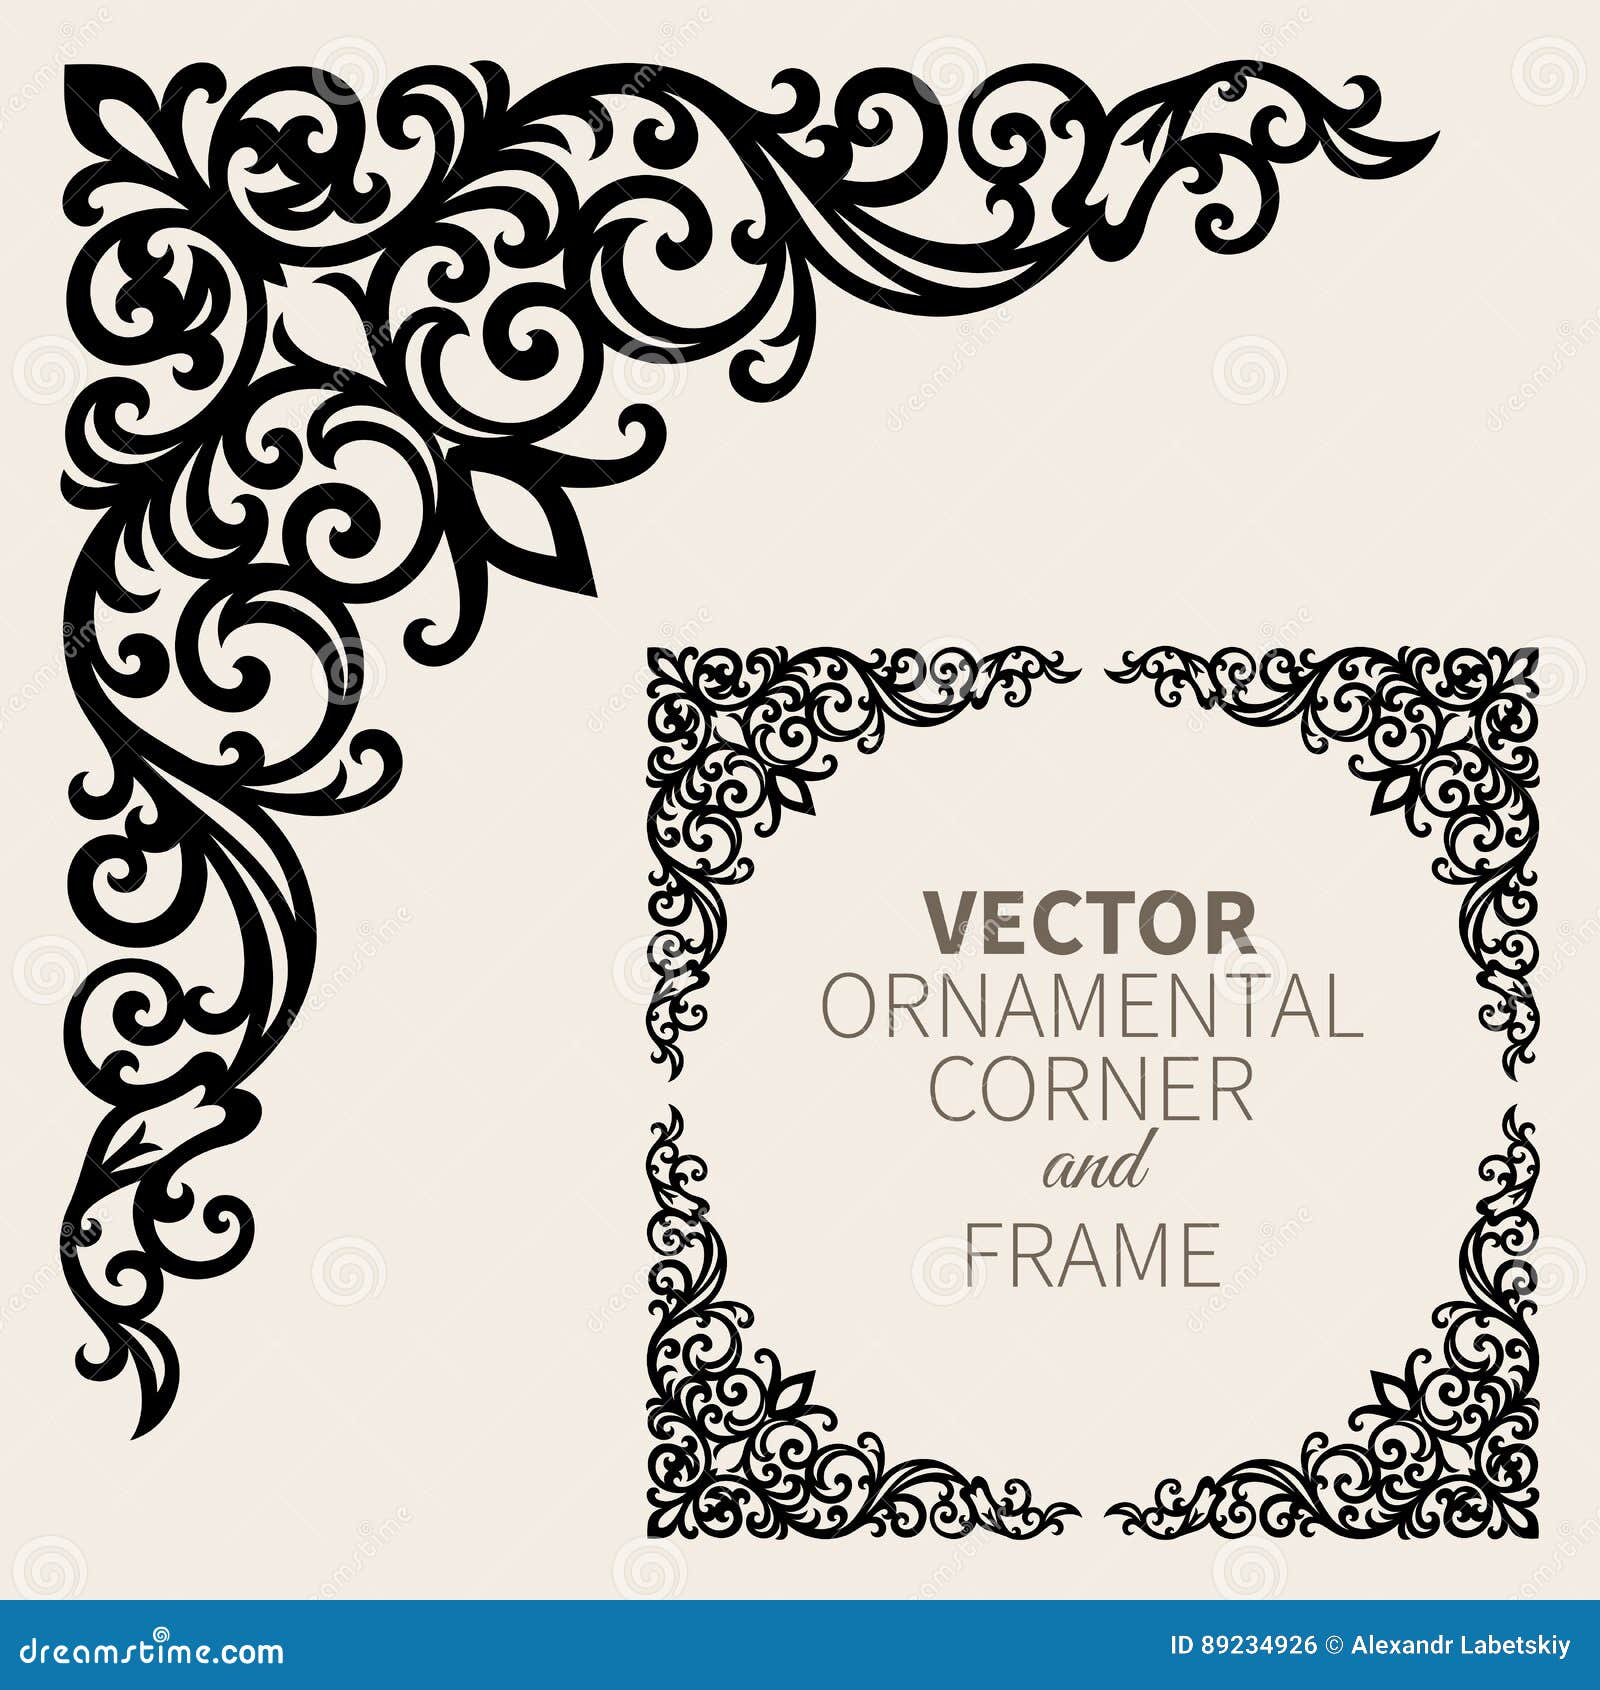  ornamental corner frame